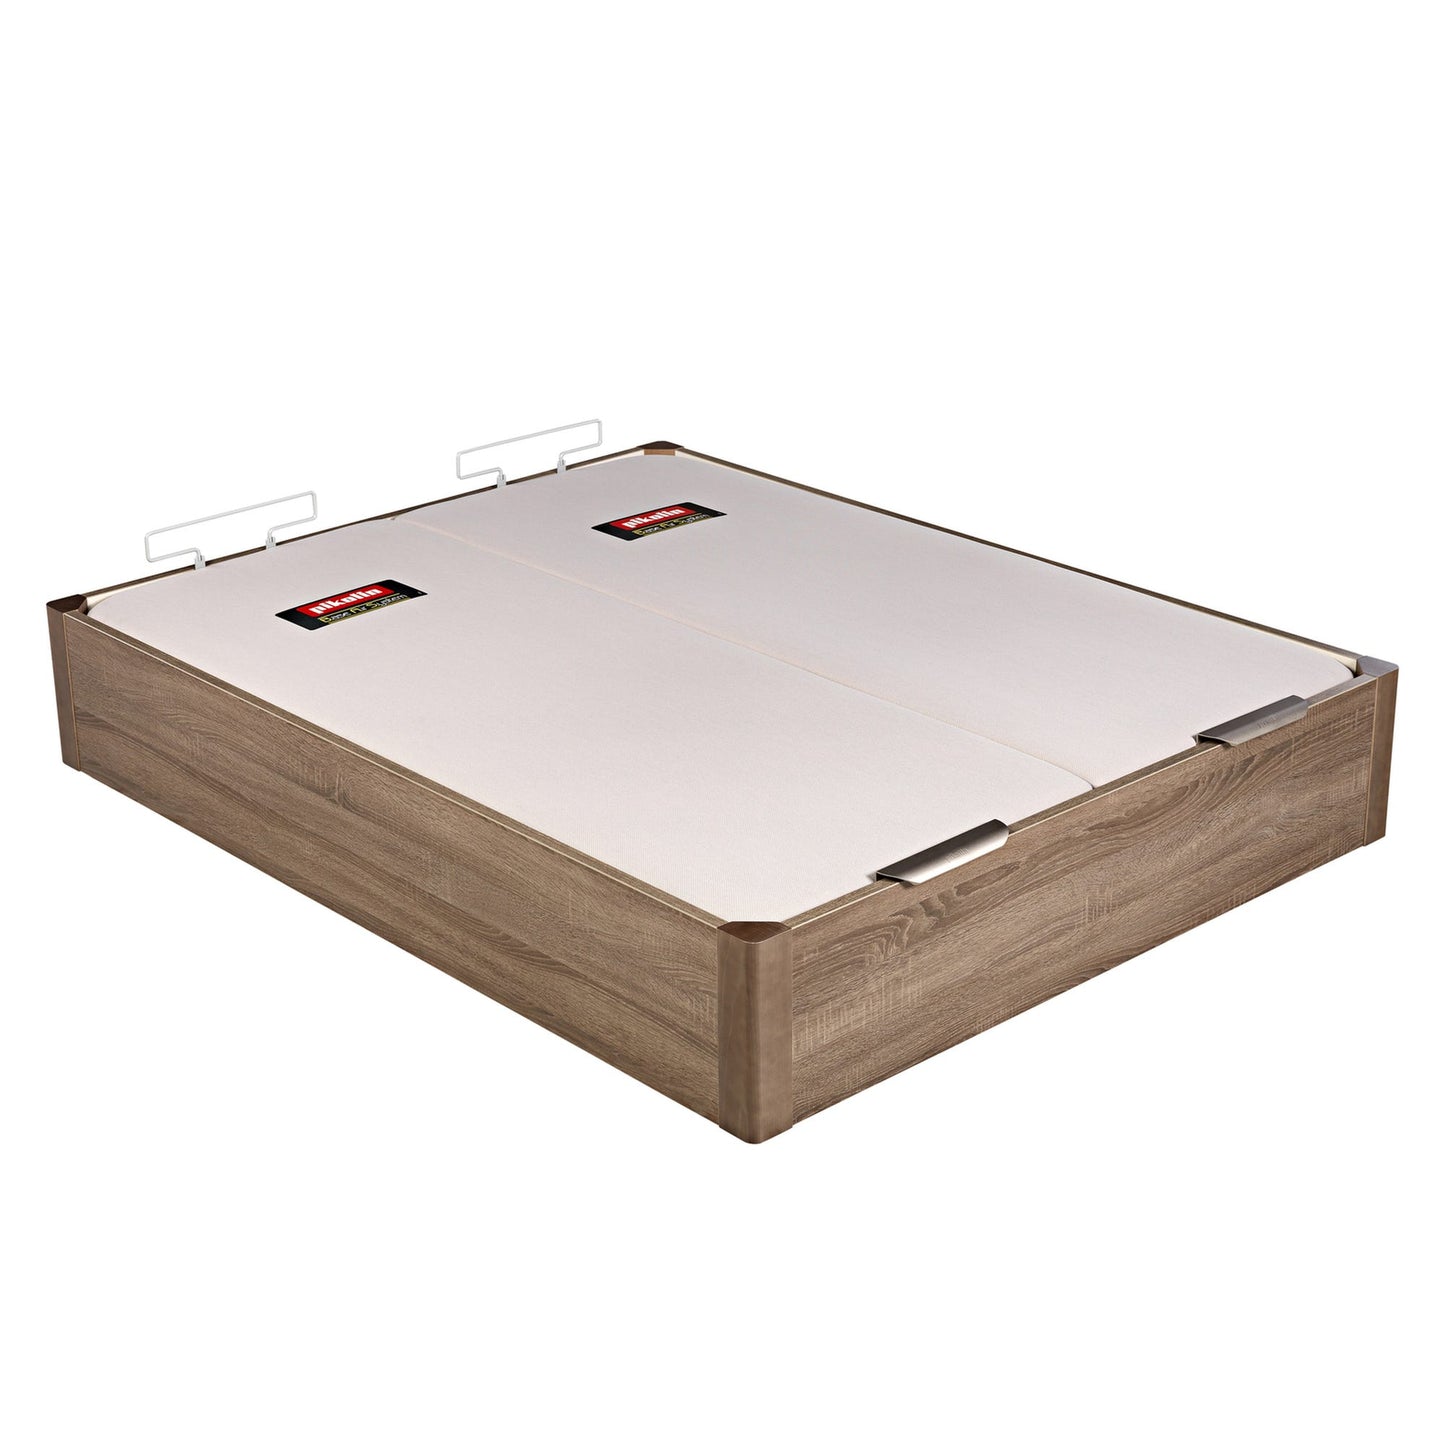 Canapé abatible de madera de tapa doble de color roble - DESIGN - 200x210